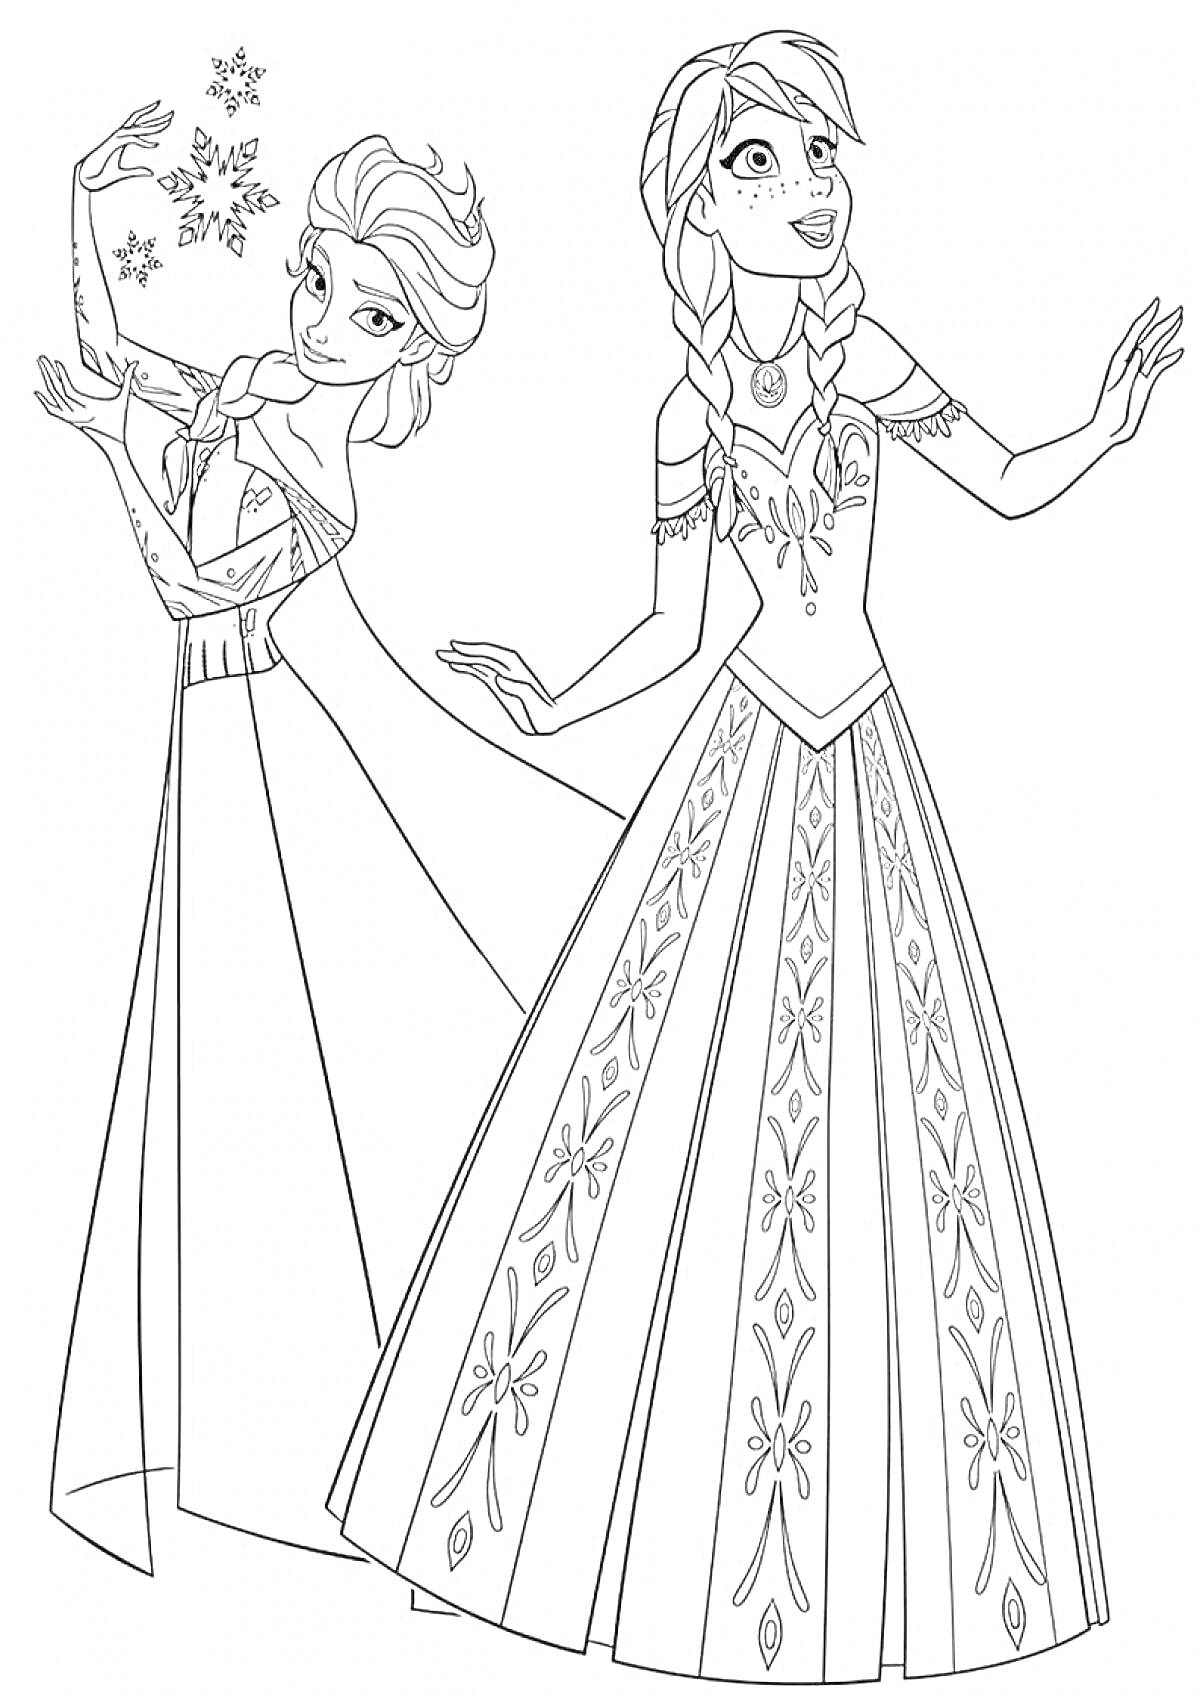 Раскраска Две принцессы из Холодного сердца в длинных платьях, одна из них использует магию снежинок